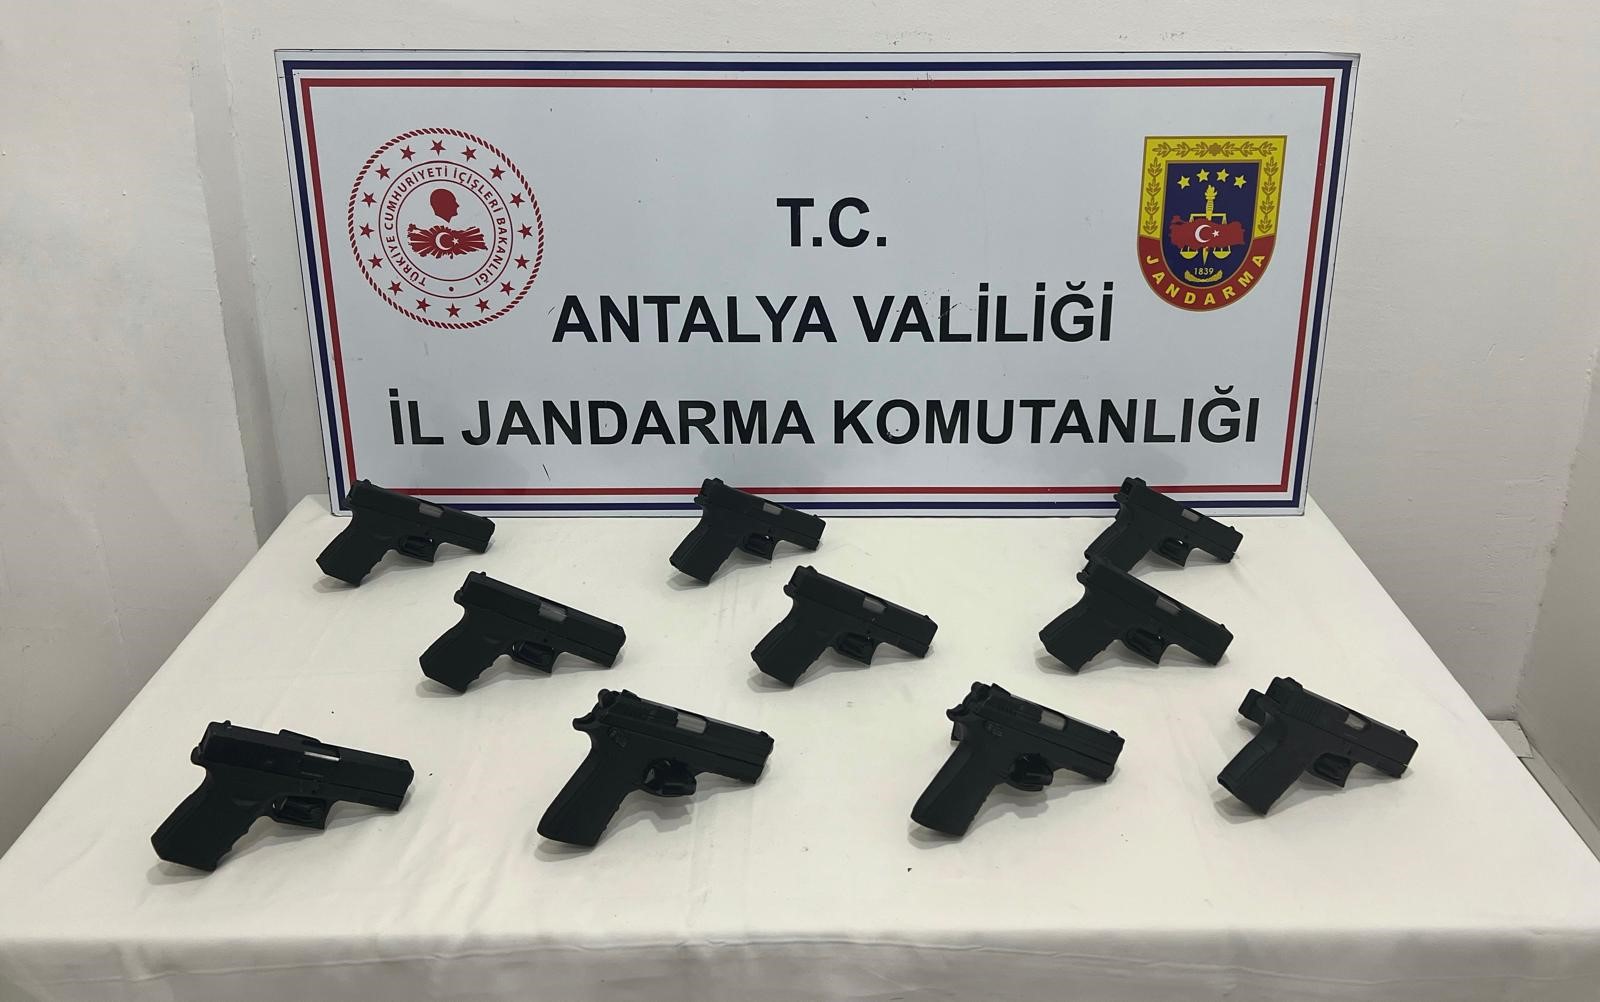 Antalya'da ruhsatsız tabanca ele geçirildi: 1 tutuklama